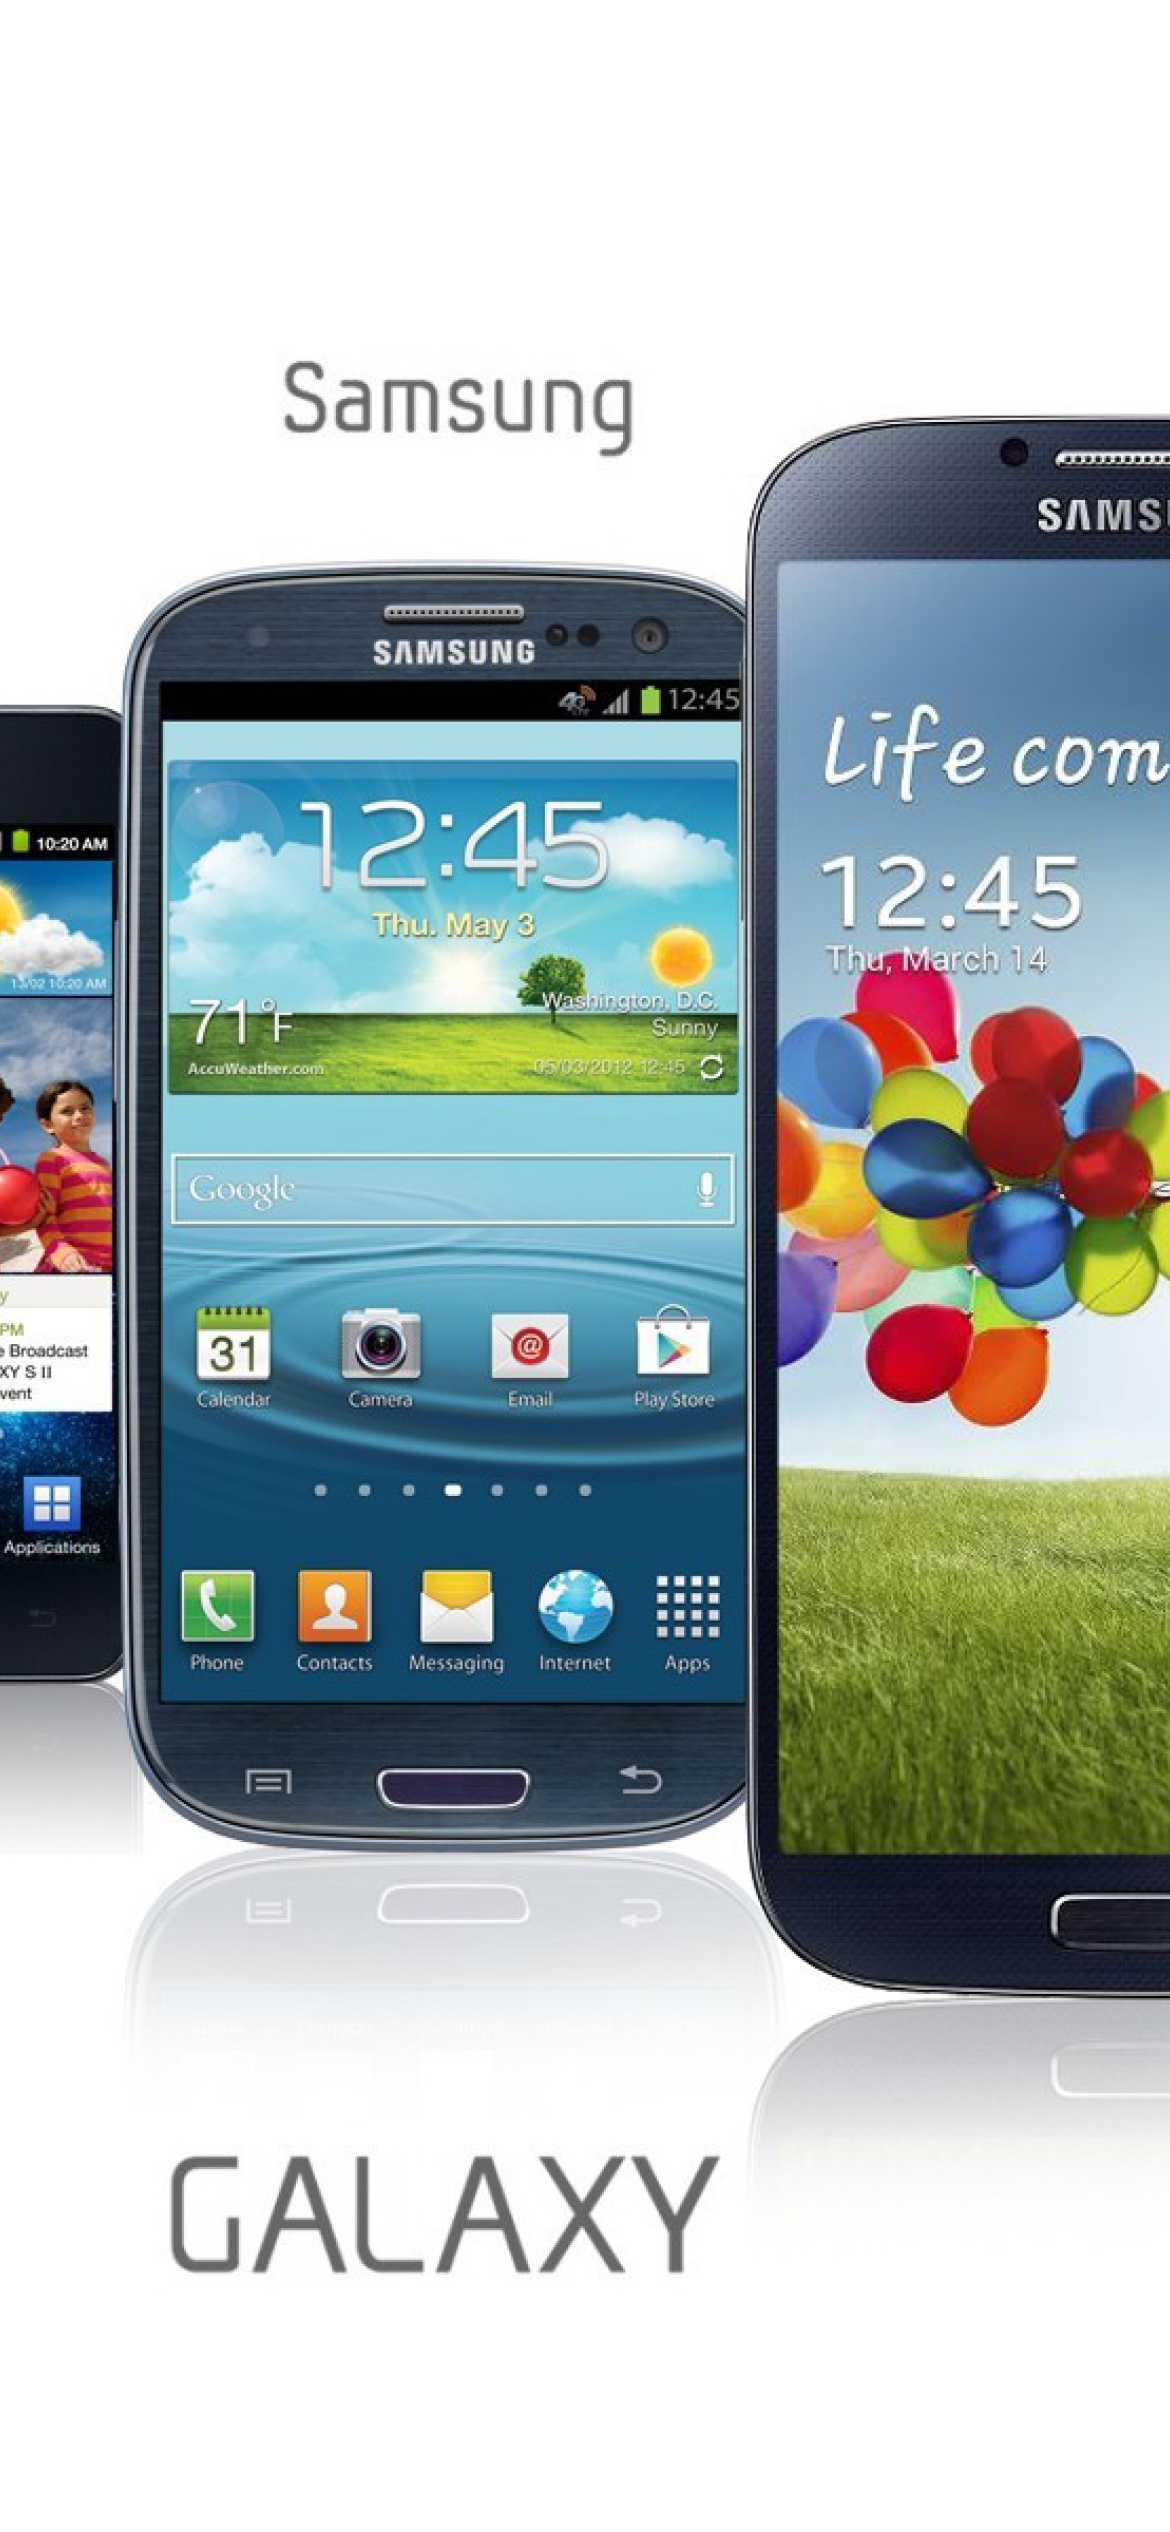 Samsung Smartphones S1, S2, S3, S4 screenshot #1 1170x2532